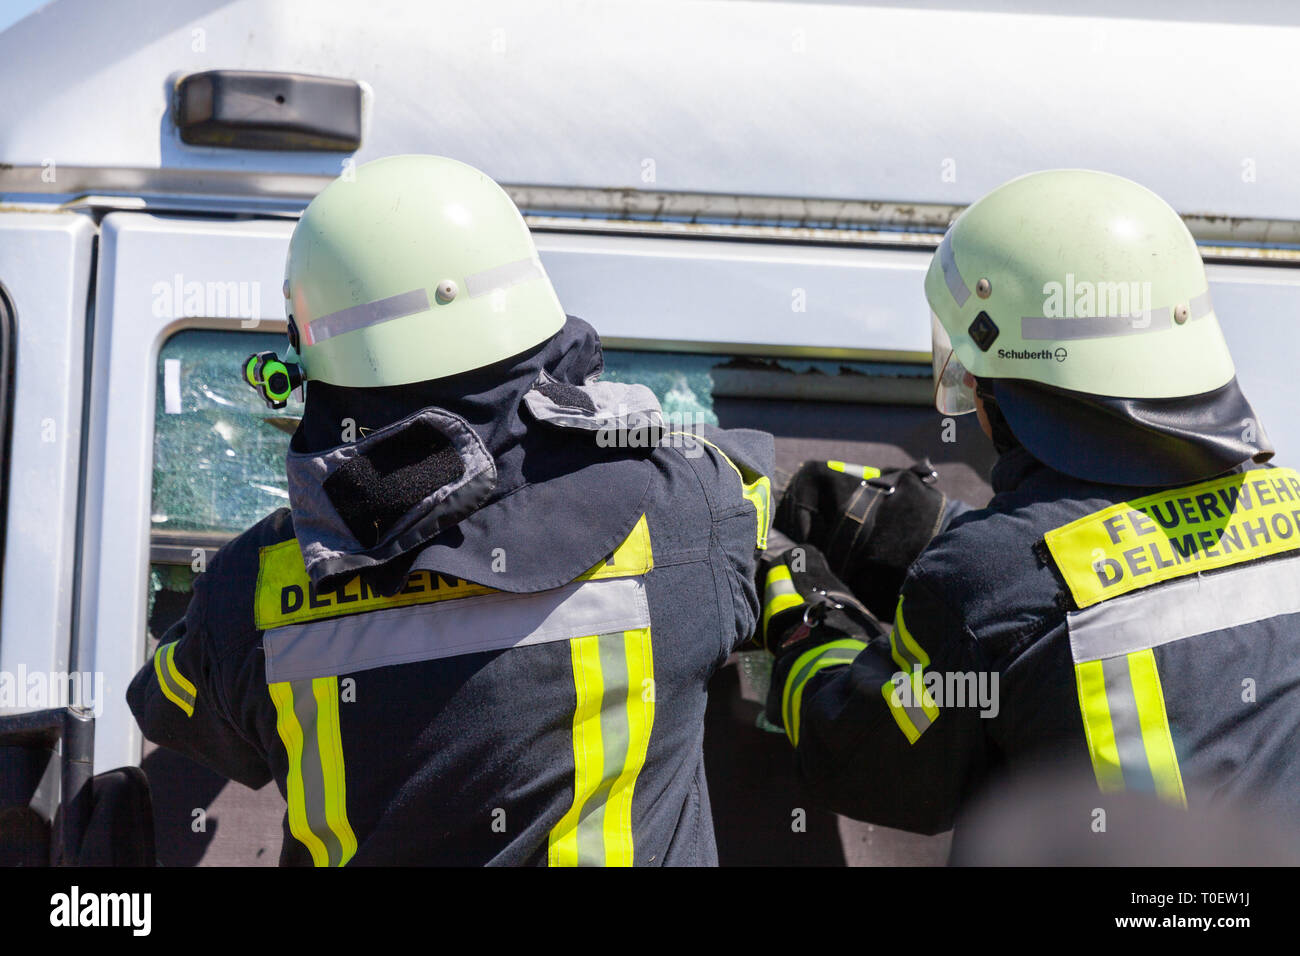 Hambourg / ALLEMAGNE - Mai 6, 2018 : les pompiers allemands s'entraînent sur un camion accident survenu à une journée portes ouvertes. Feuerwehr pompiers allemand moyen. Banque D'Images